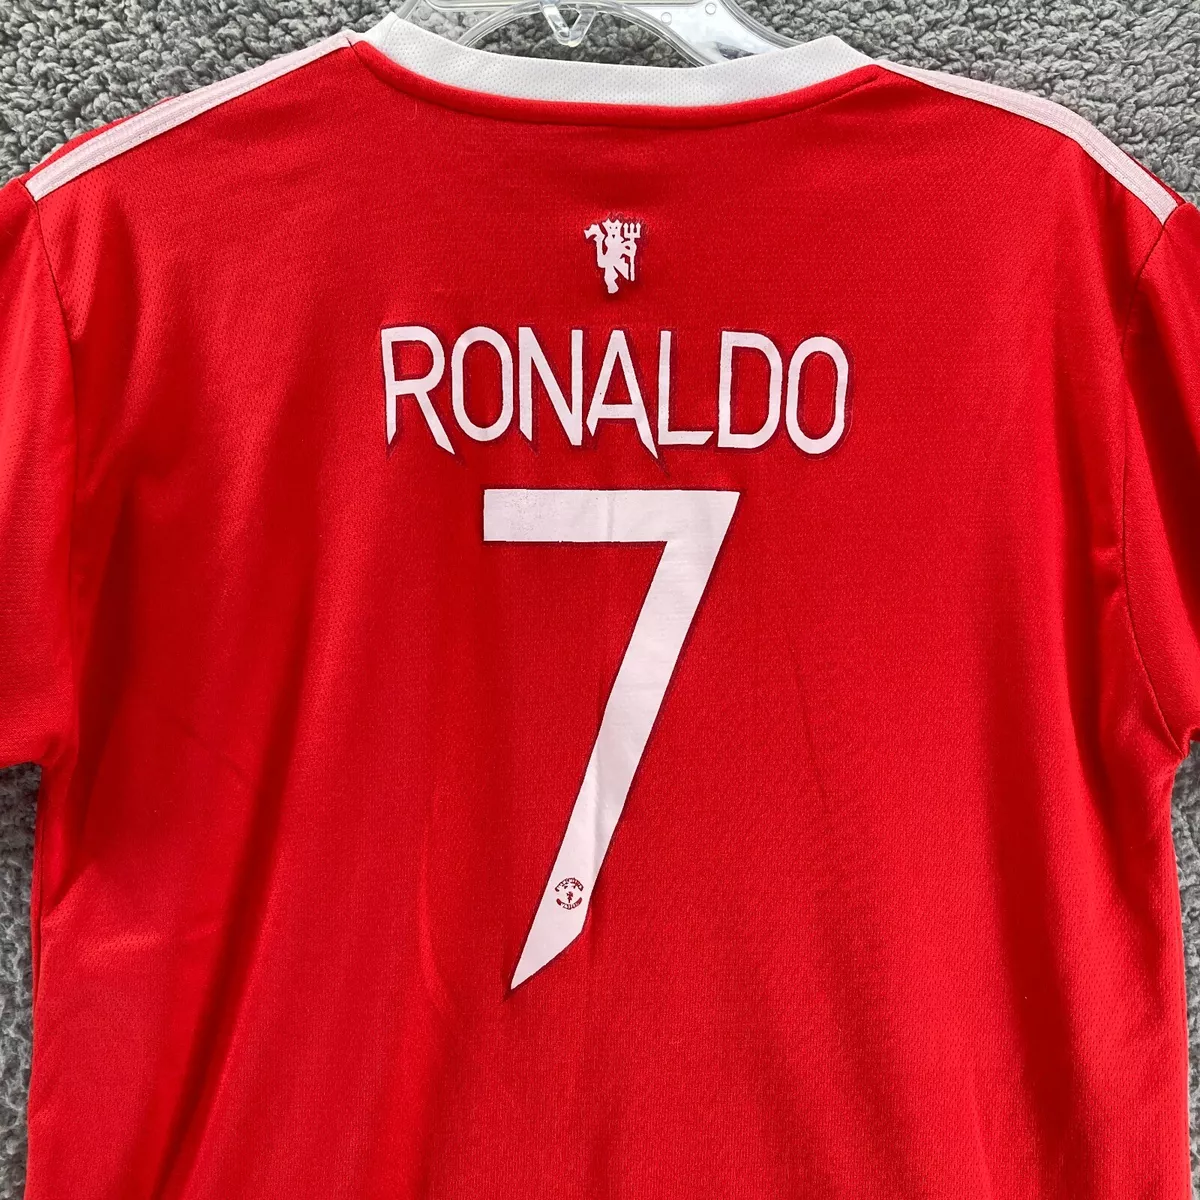 ronaldo shirt home